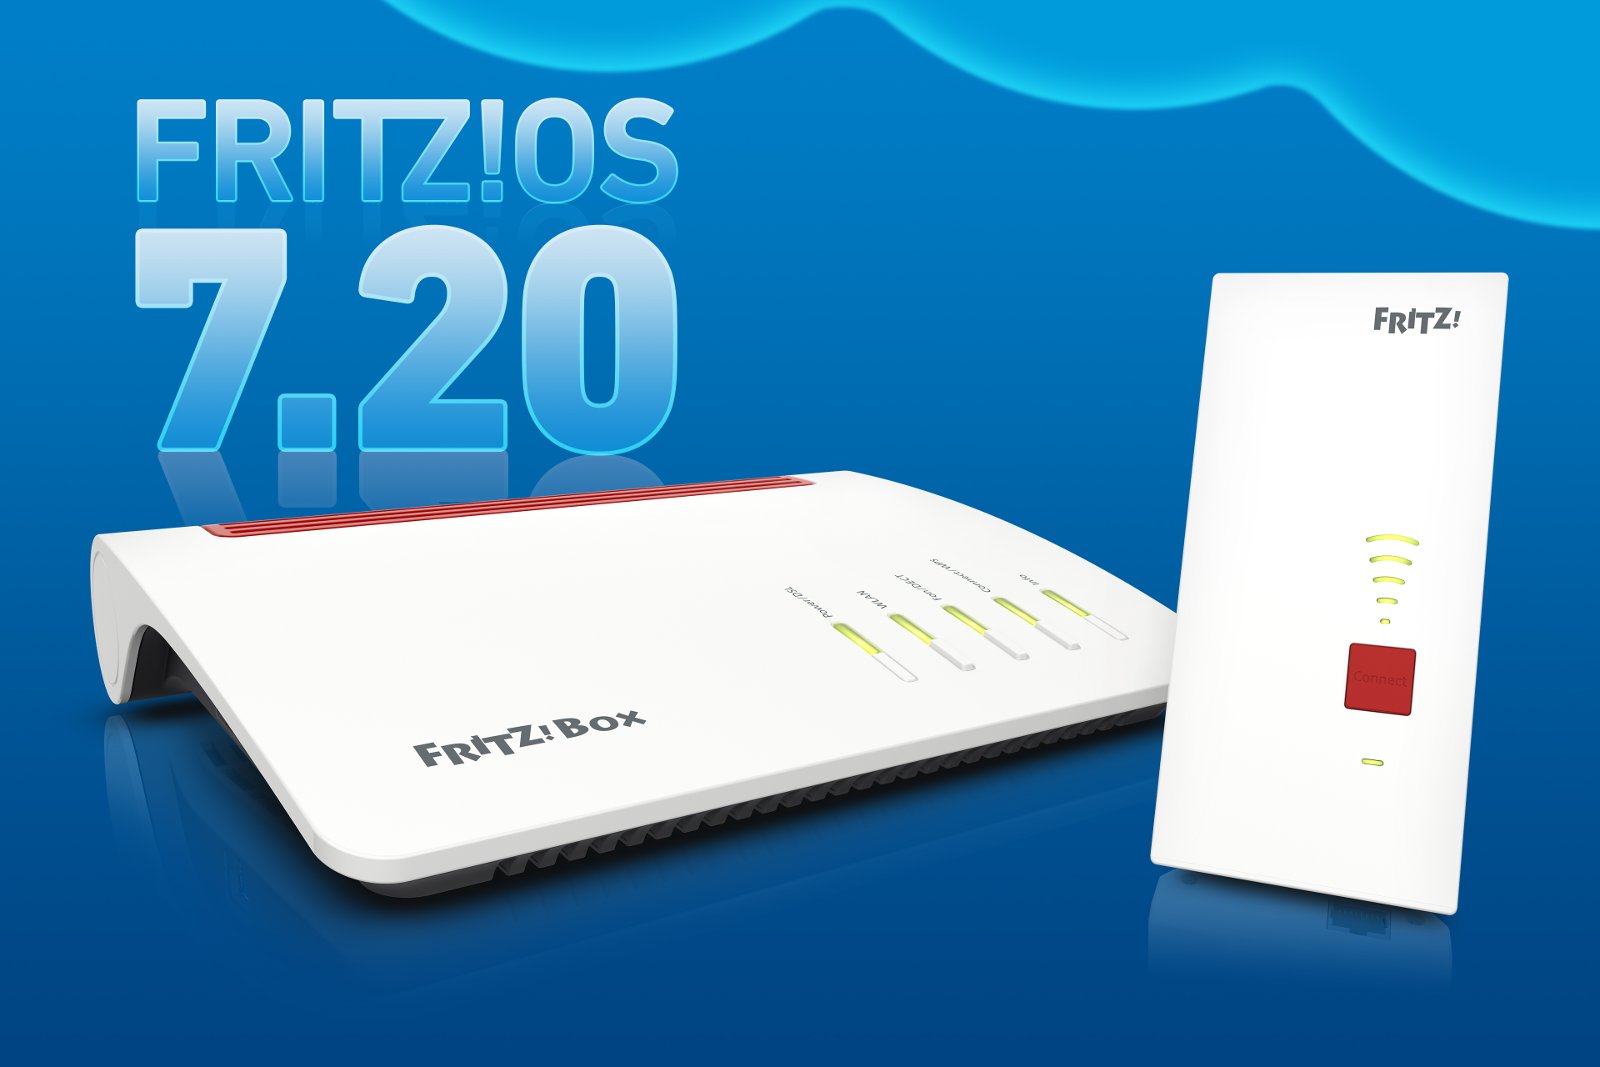 neues FRITZ!OS 7.20 mit relevanten Neuerungen für schweizer FRITZ!Box-Anwender